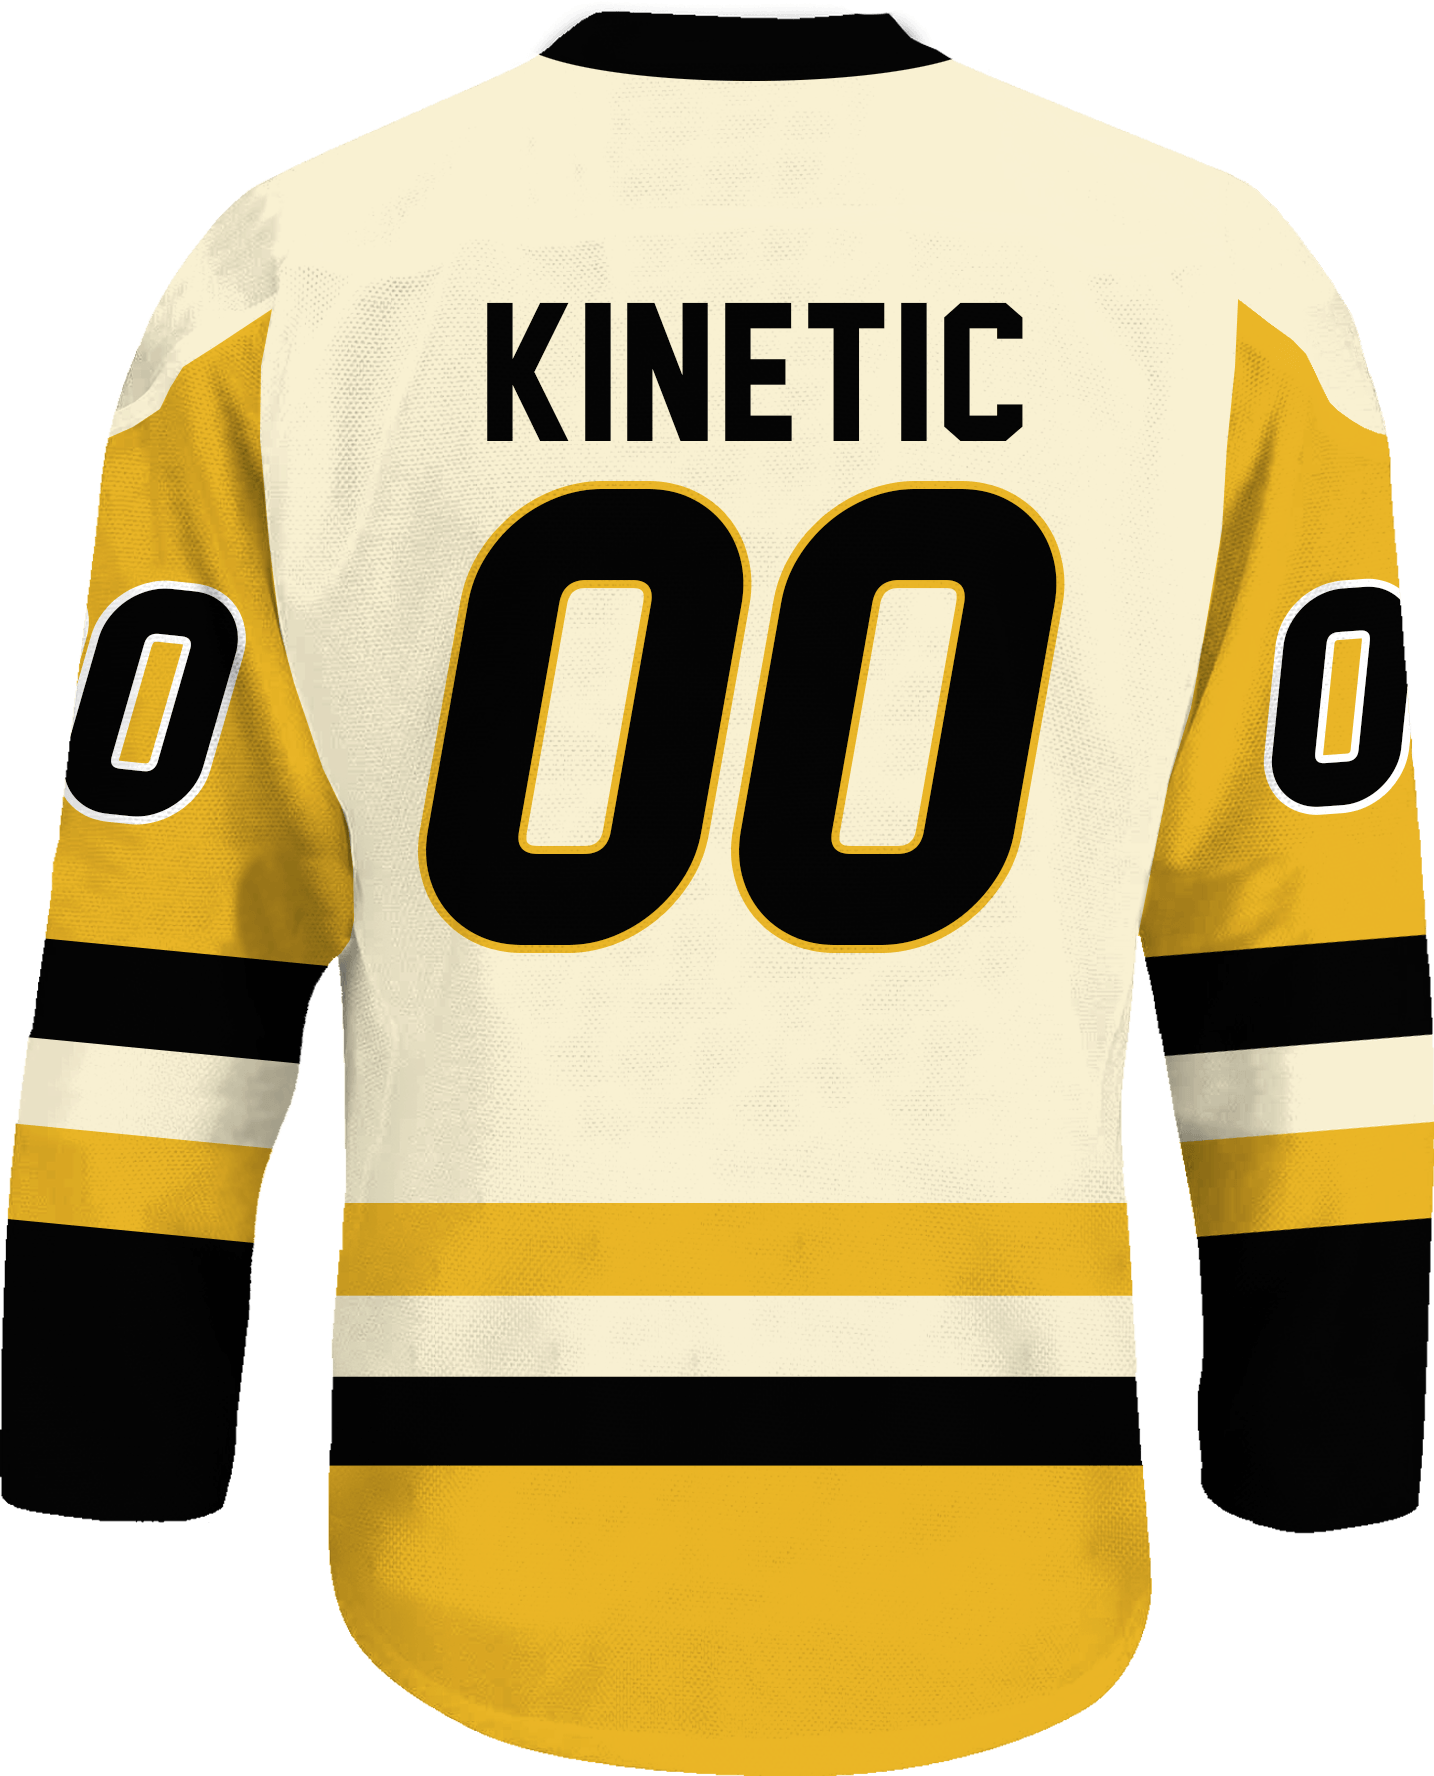 Kappa Sigma - Golden Cream Hockey Jersey - Kinetic Society